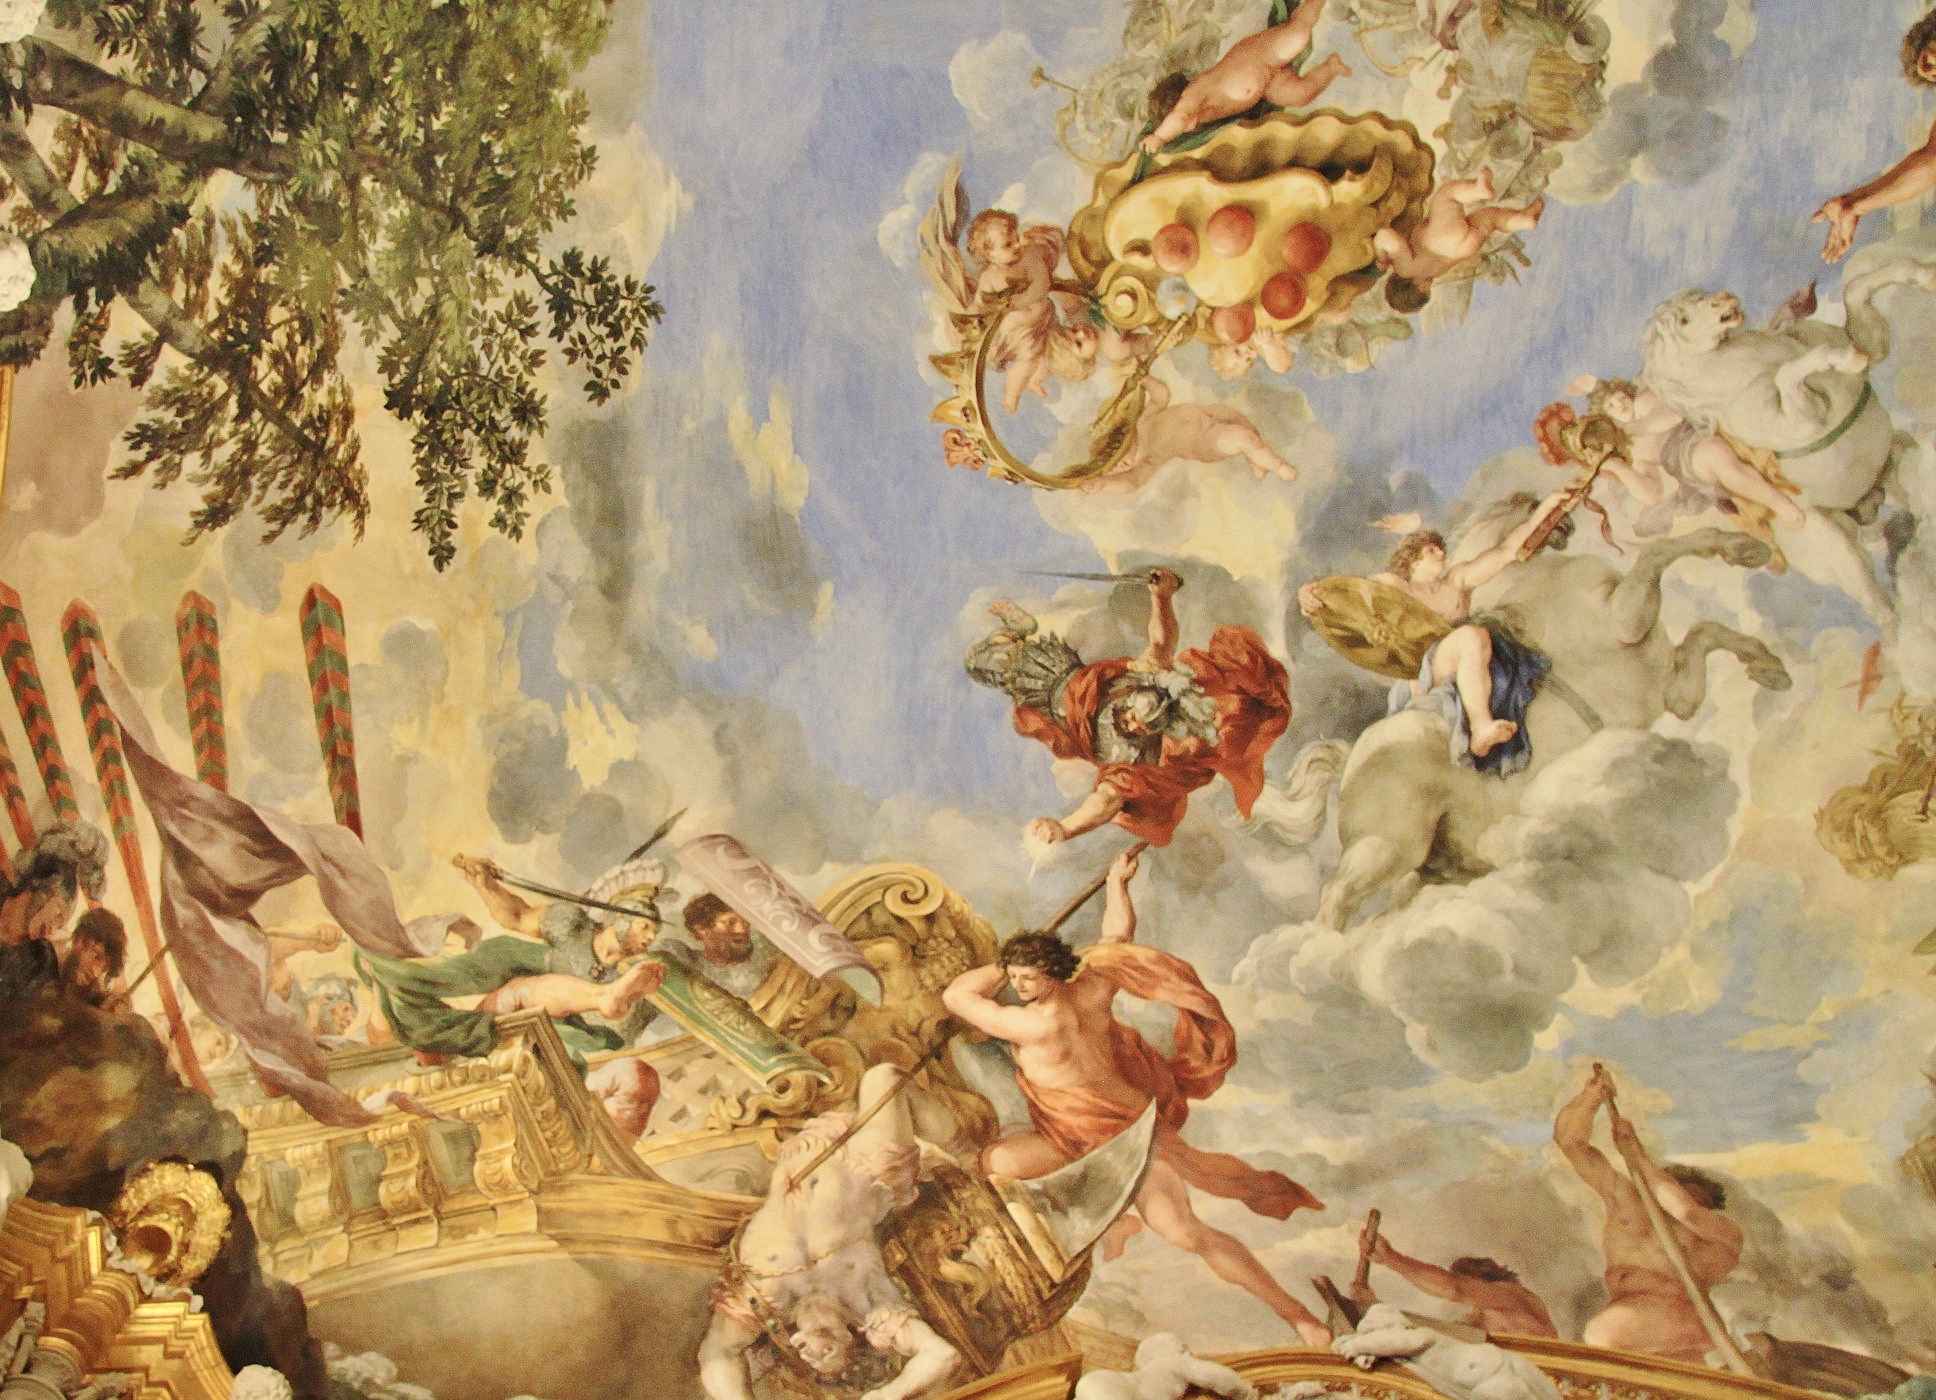 Foto: Interior del palacio Pitti - Florencia (Tuscany), Italia